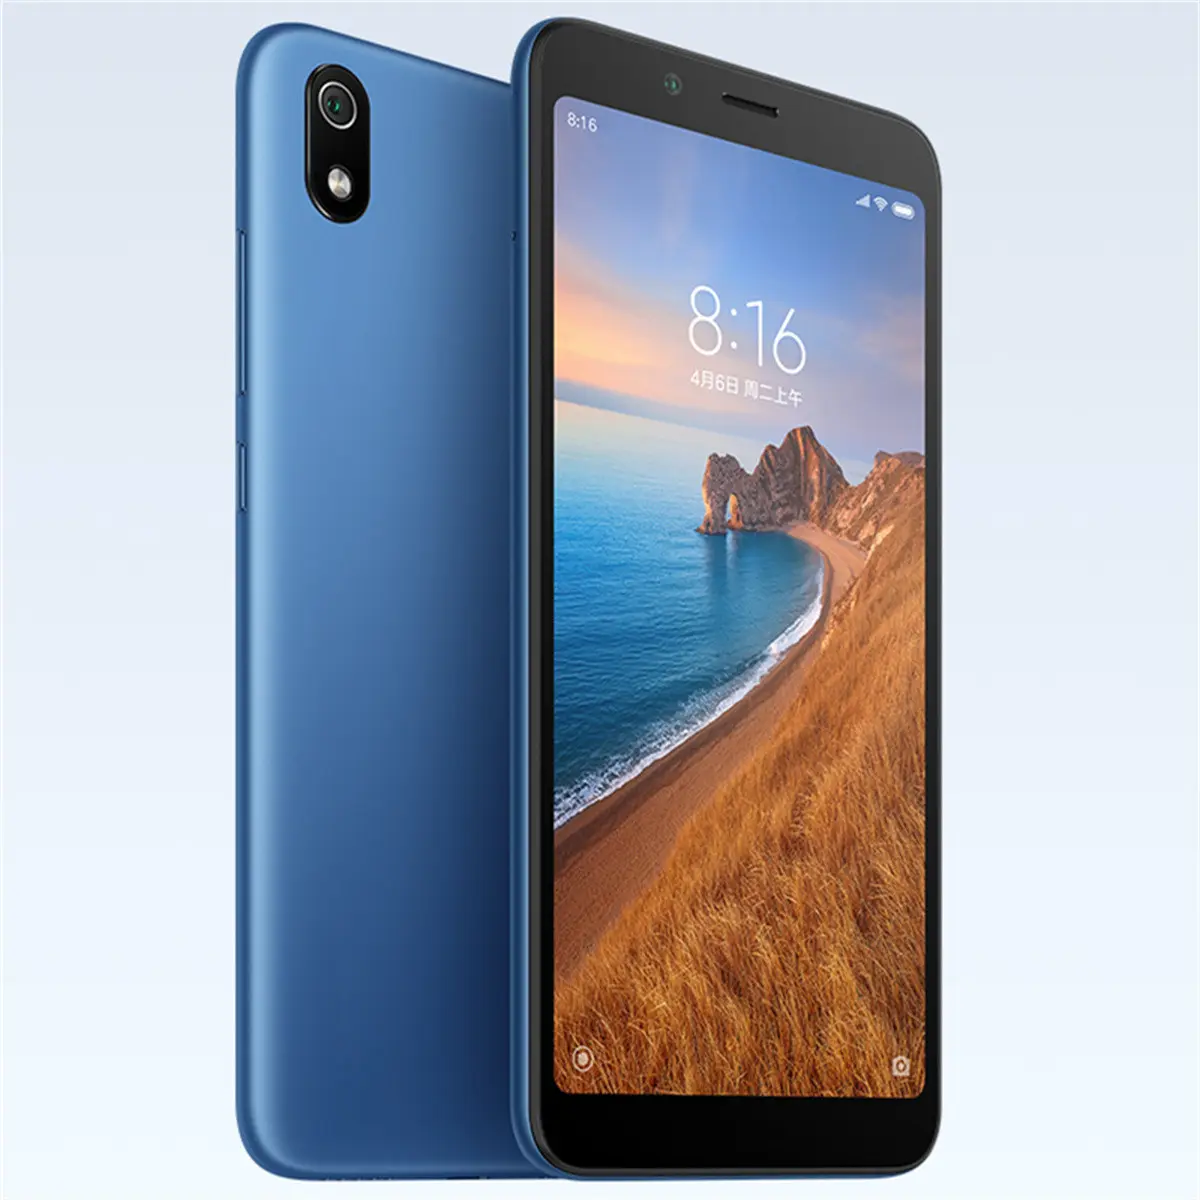 Cash on delivery cellulare telefono redmi più economico per Xiaomi Redmi 7A smartphone portatile di proprietà